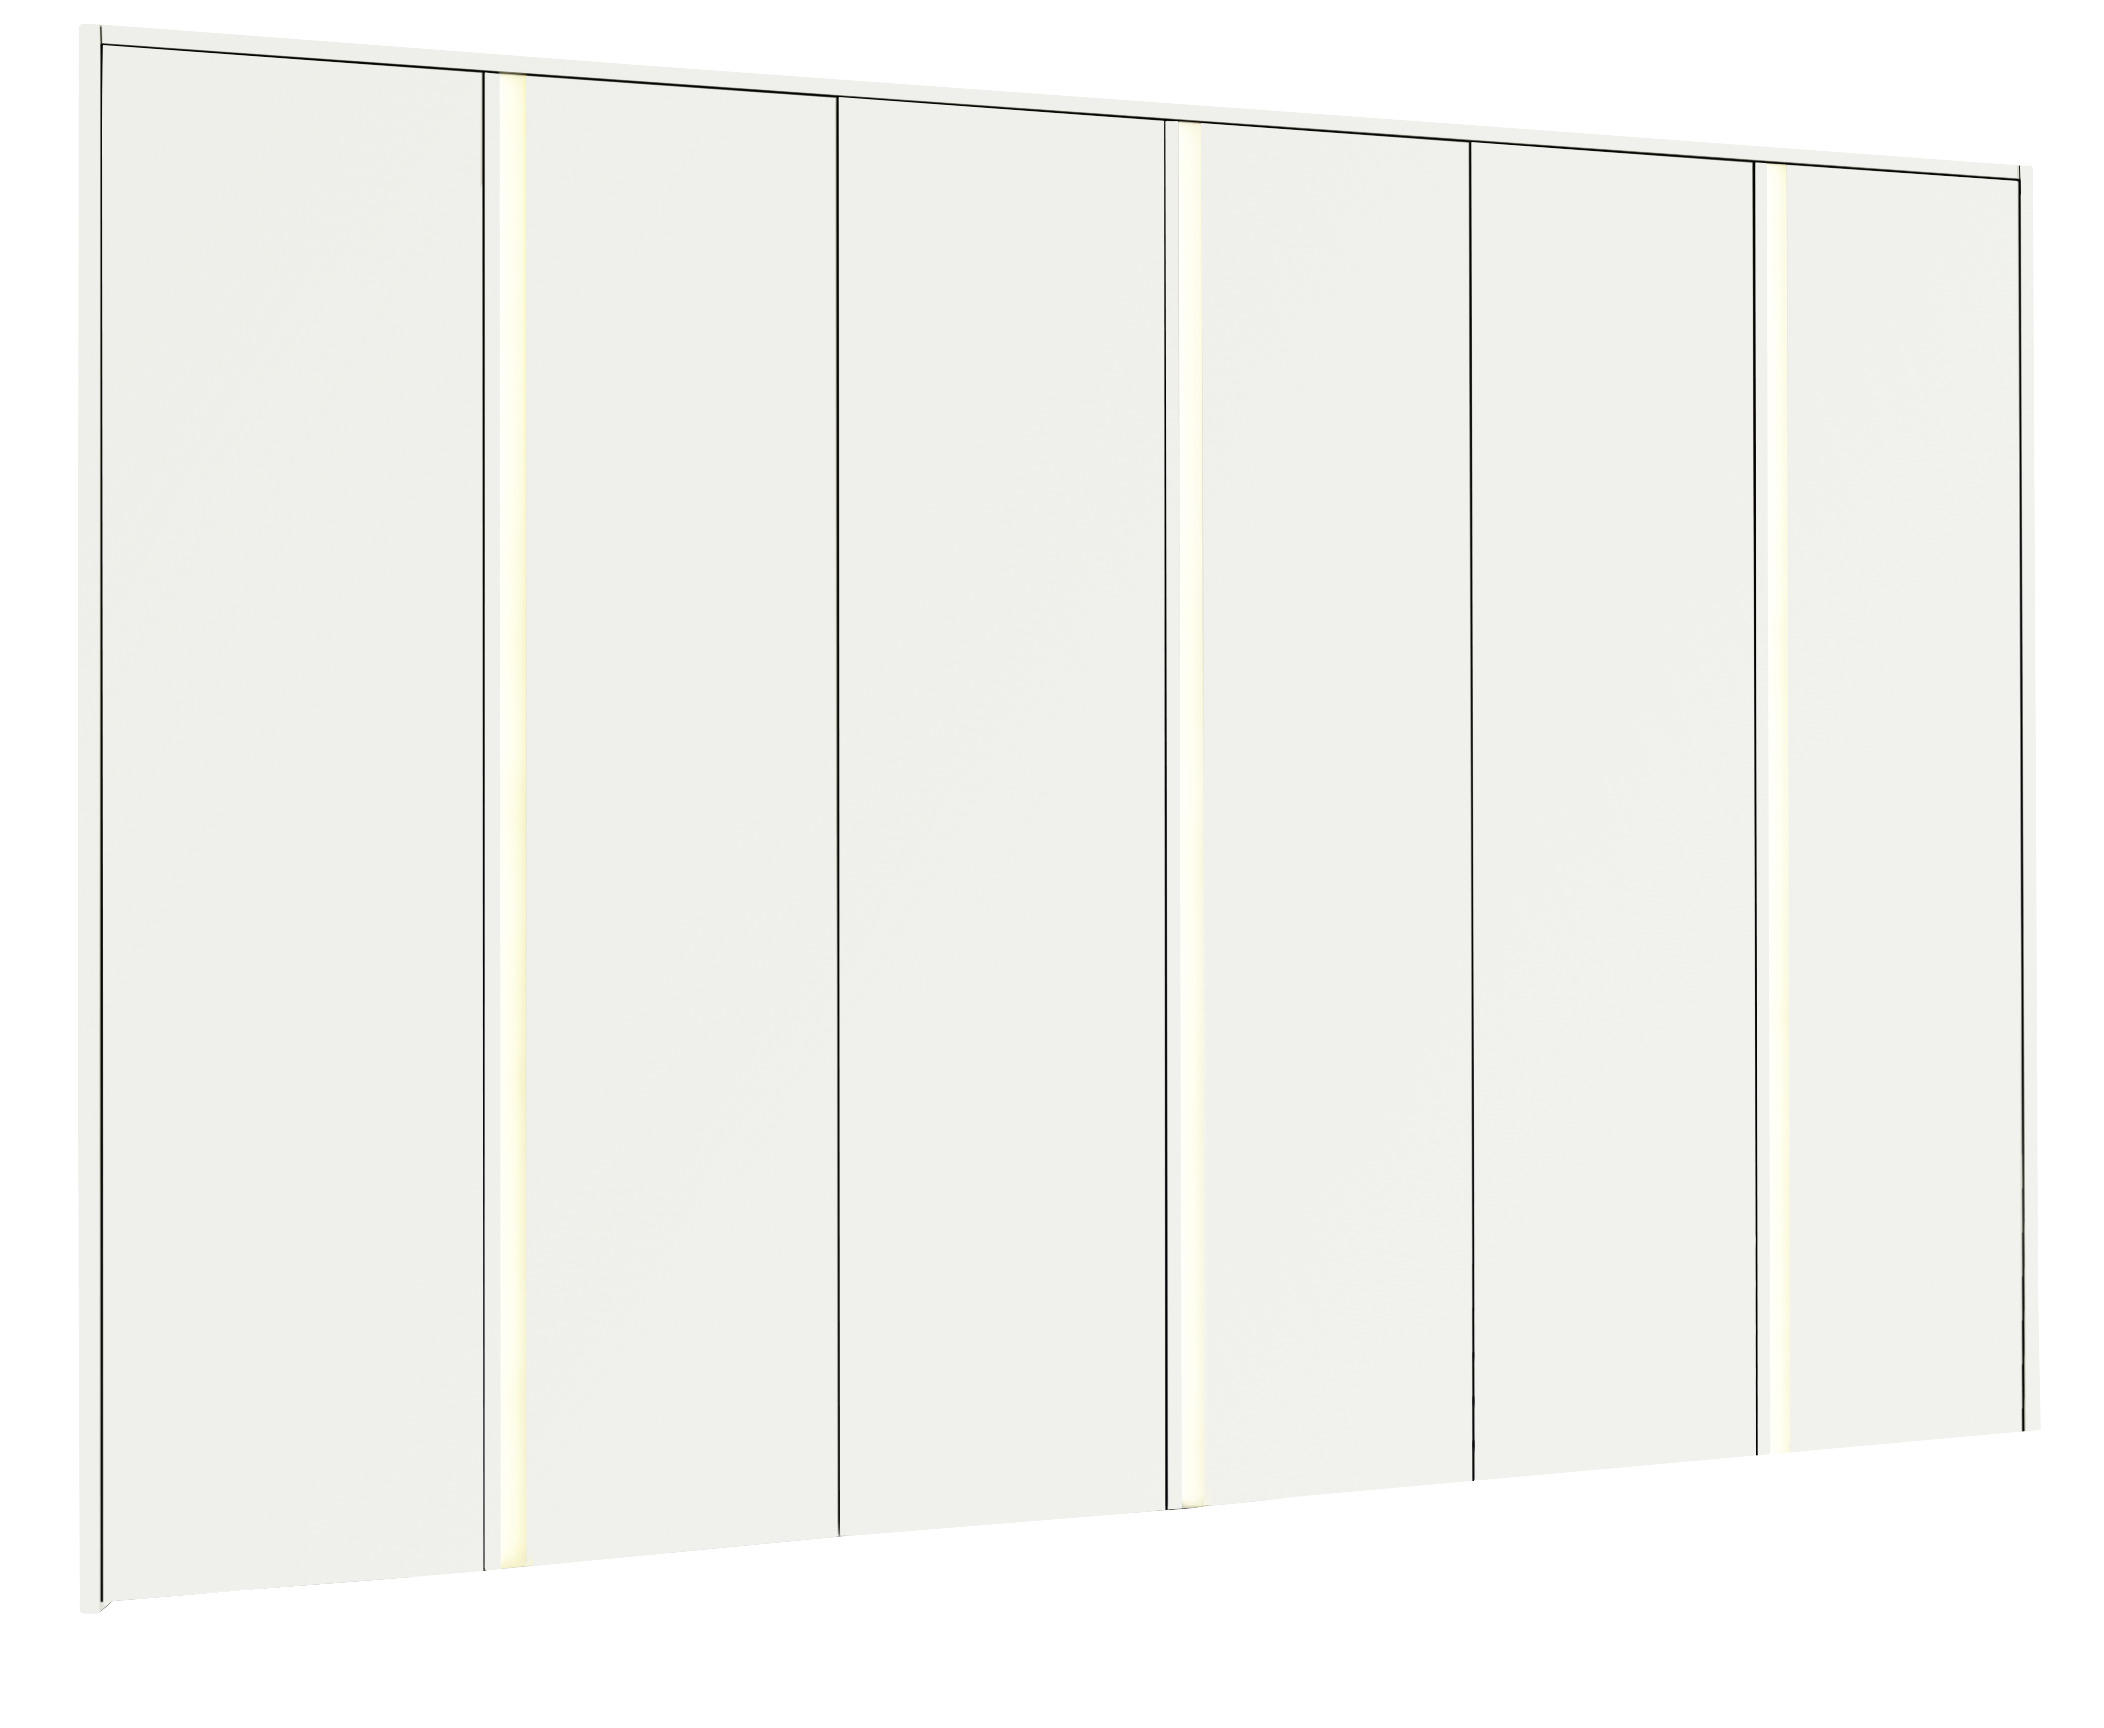 DREHTÜRENSCHRANK 6-türig Weiß  - Alufarben/Weiß, Design, Holzwerkstoff/Metall (302/229/61cm) - hülsta